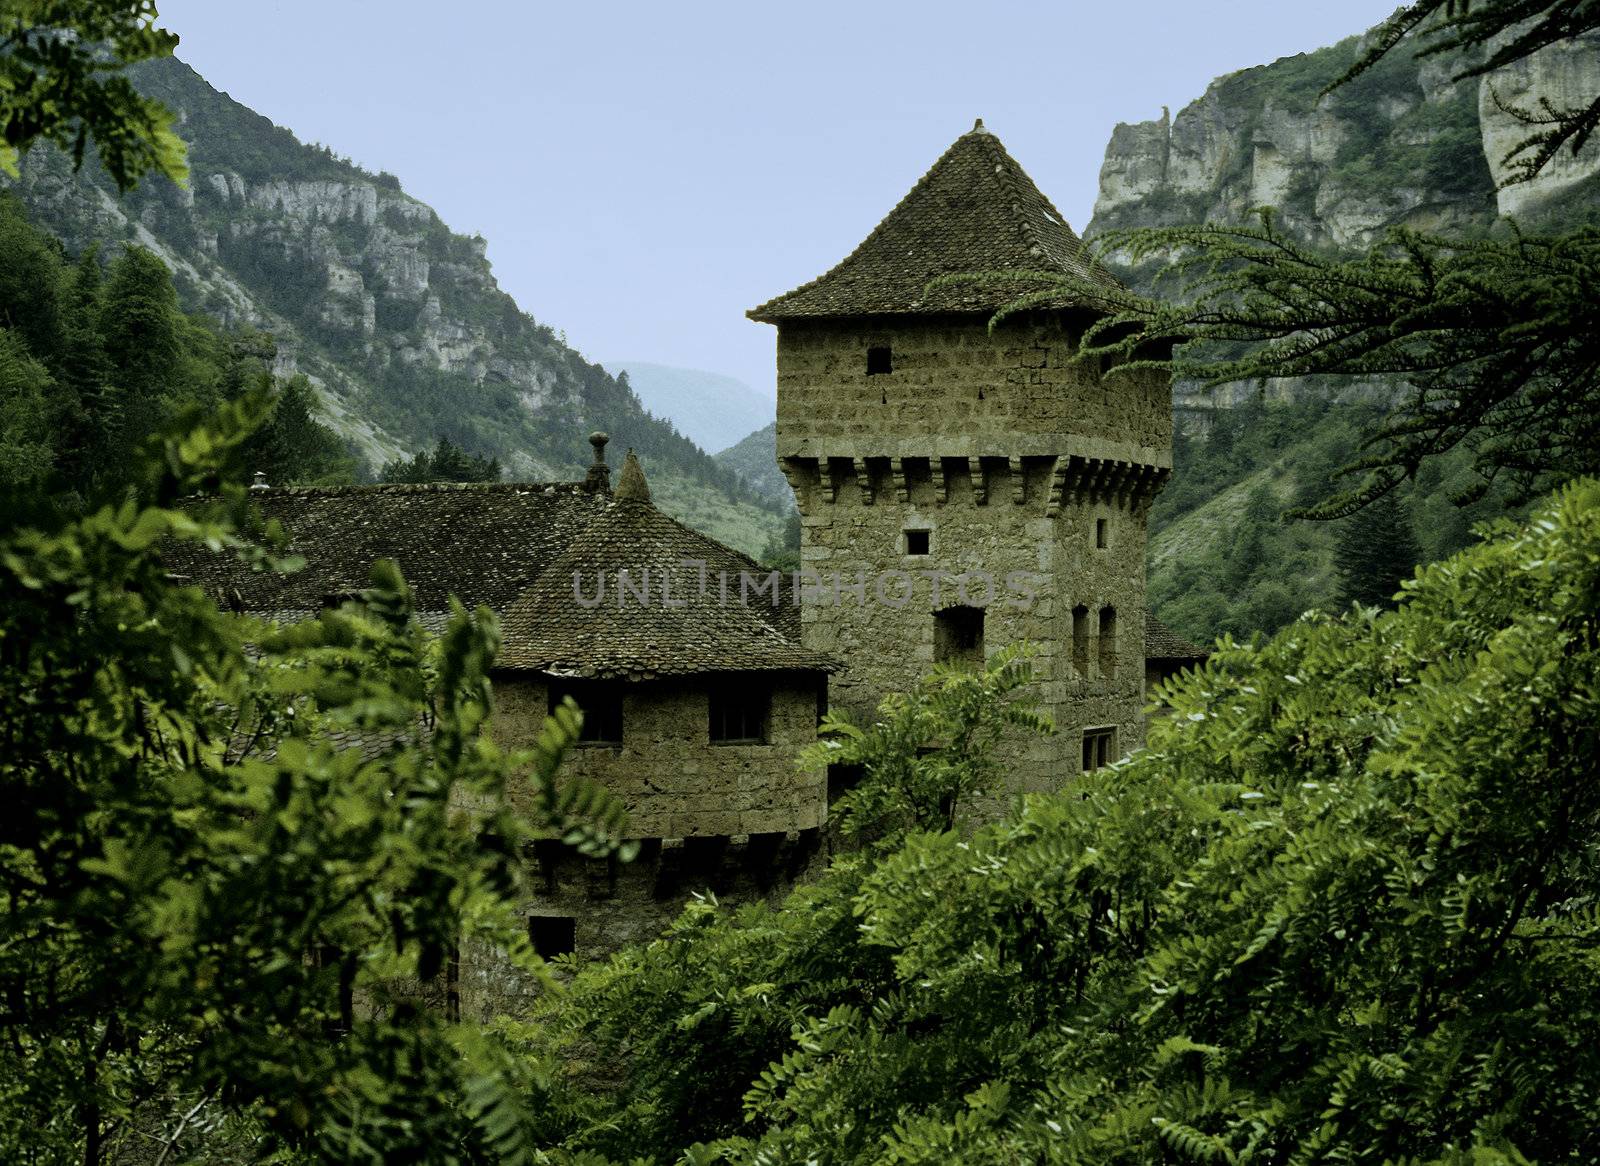 Castle in rocky valley by steheap